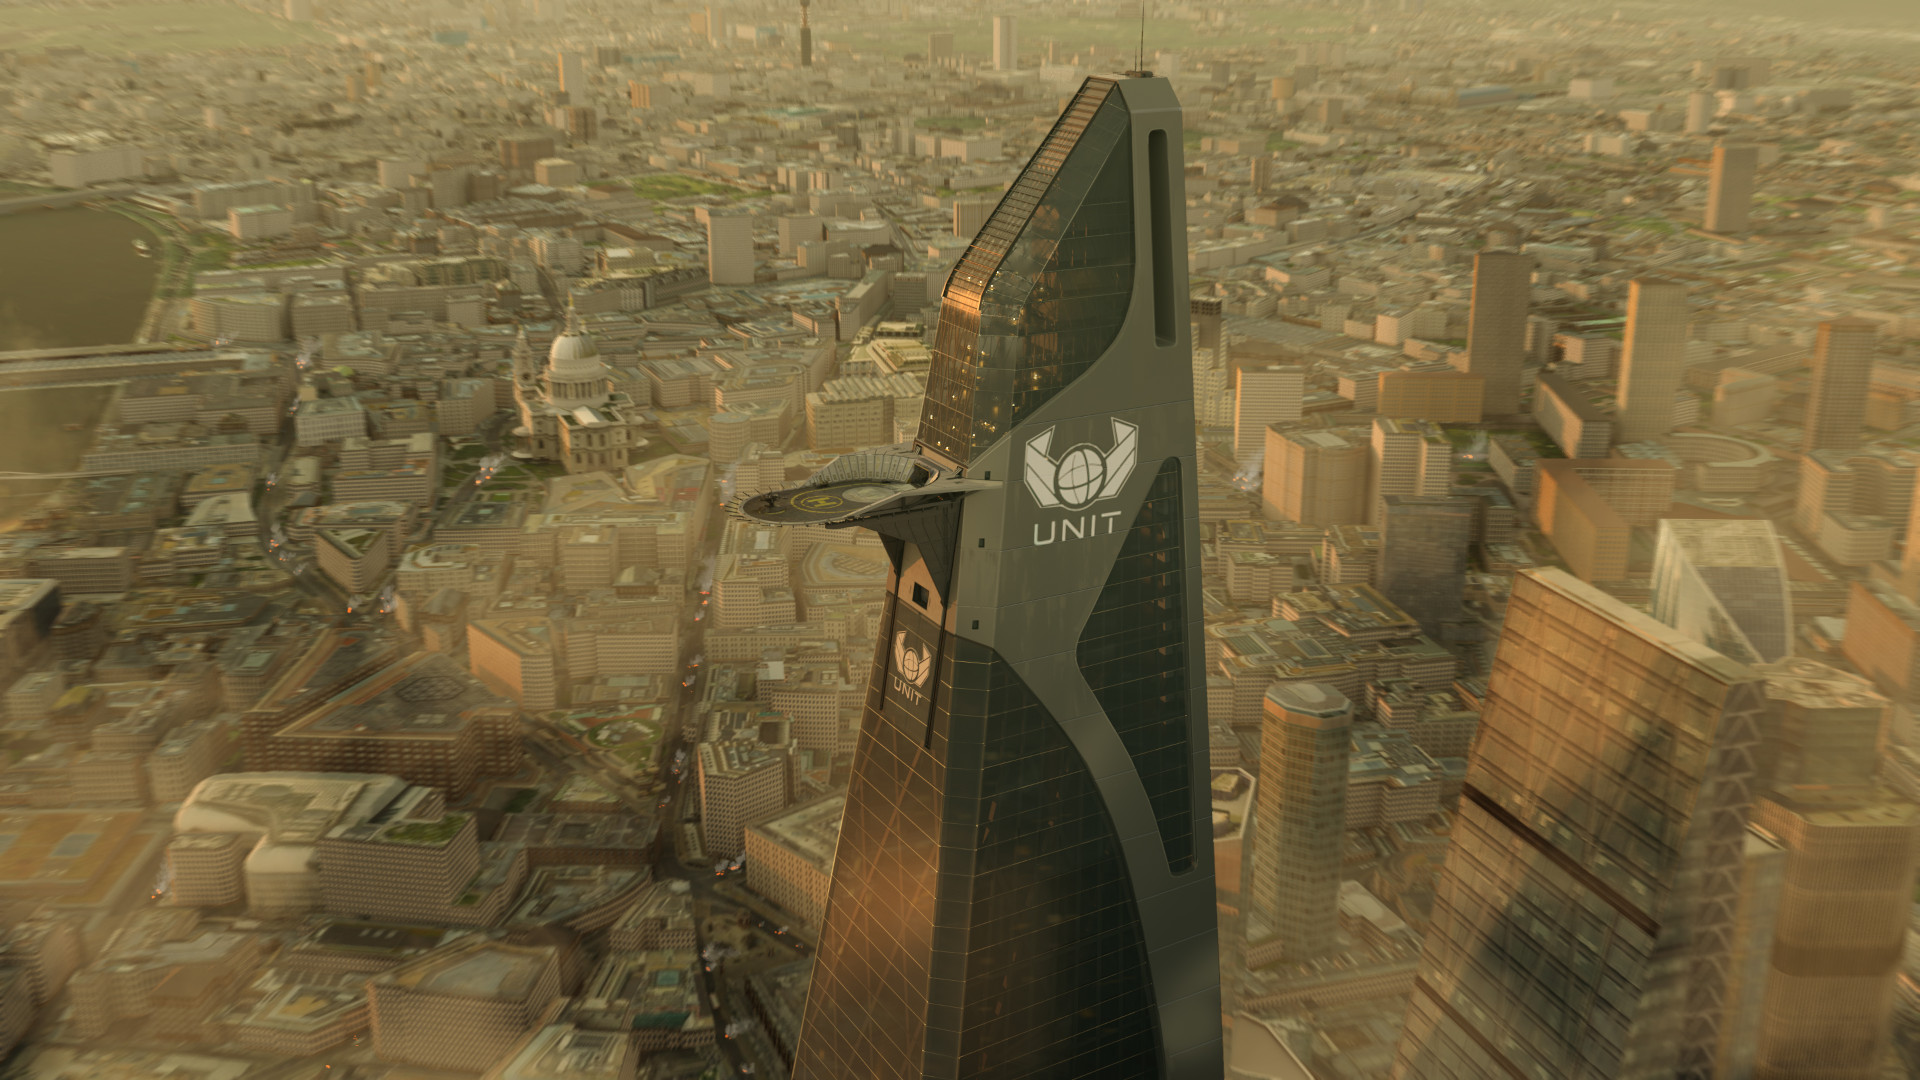 UNIT Tower concept art